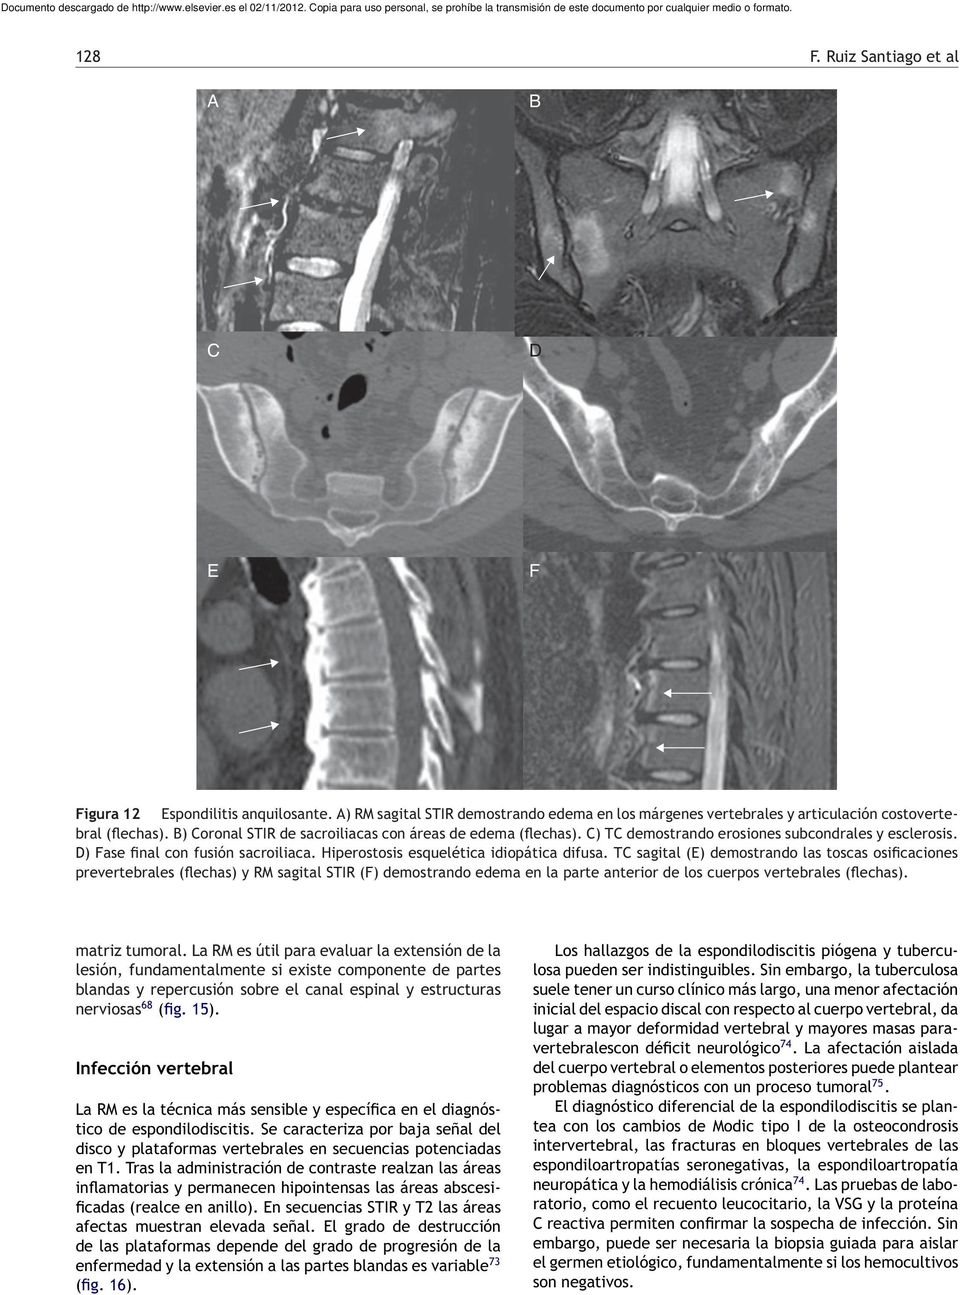 T sagital (E) demostrando las toscas osificaciones prevertebrales (flechas) y RM sagital STIR (F) demostrando edema en la parte anterior de los cuerpos vertebrales (flechas). matriz tumoral.